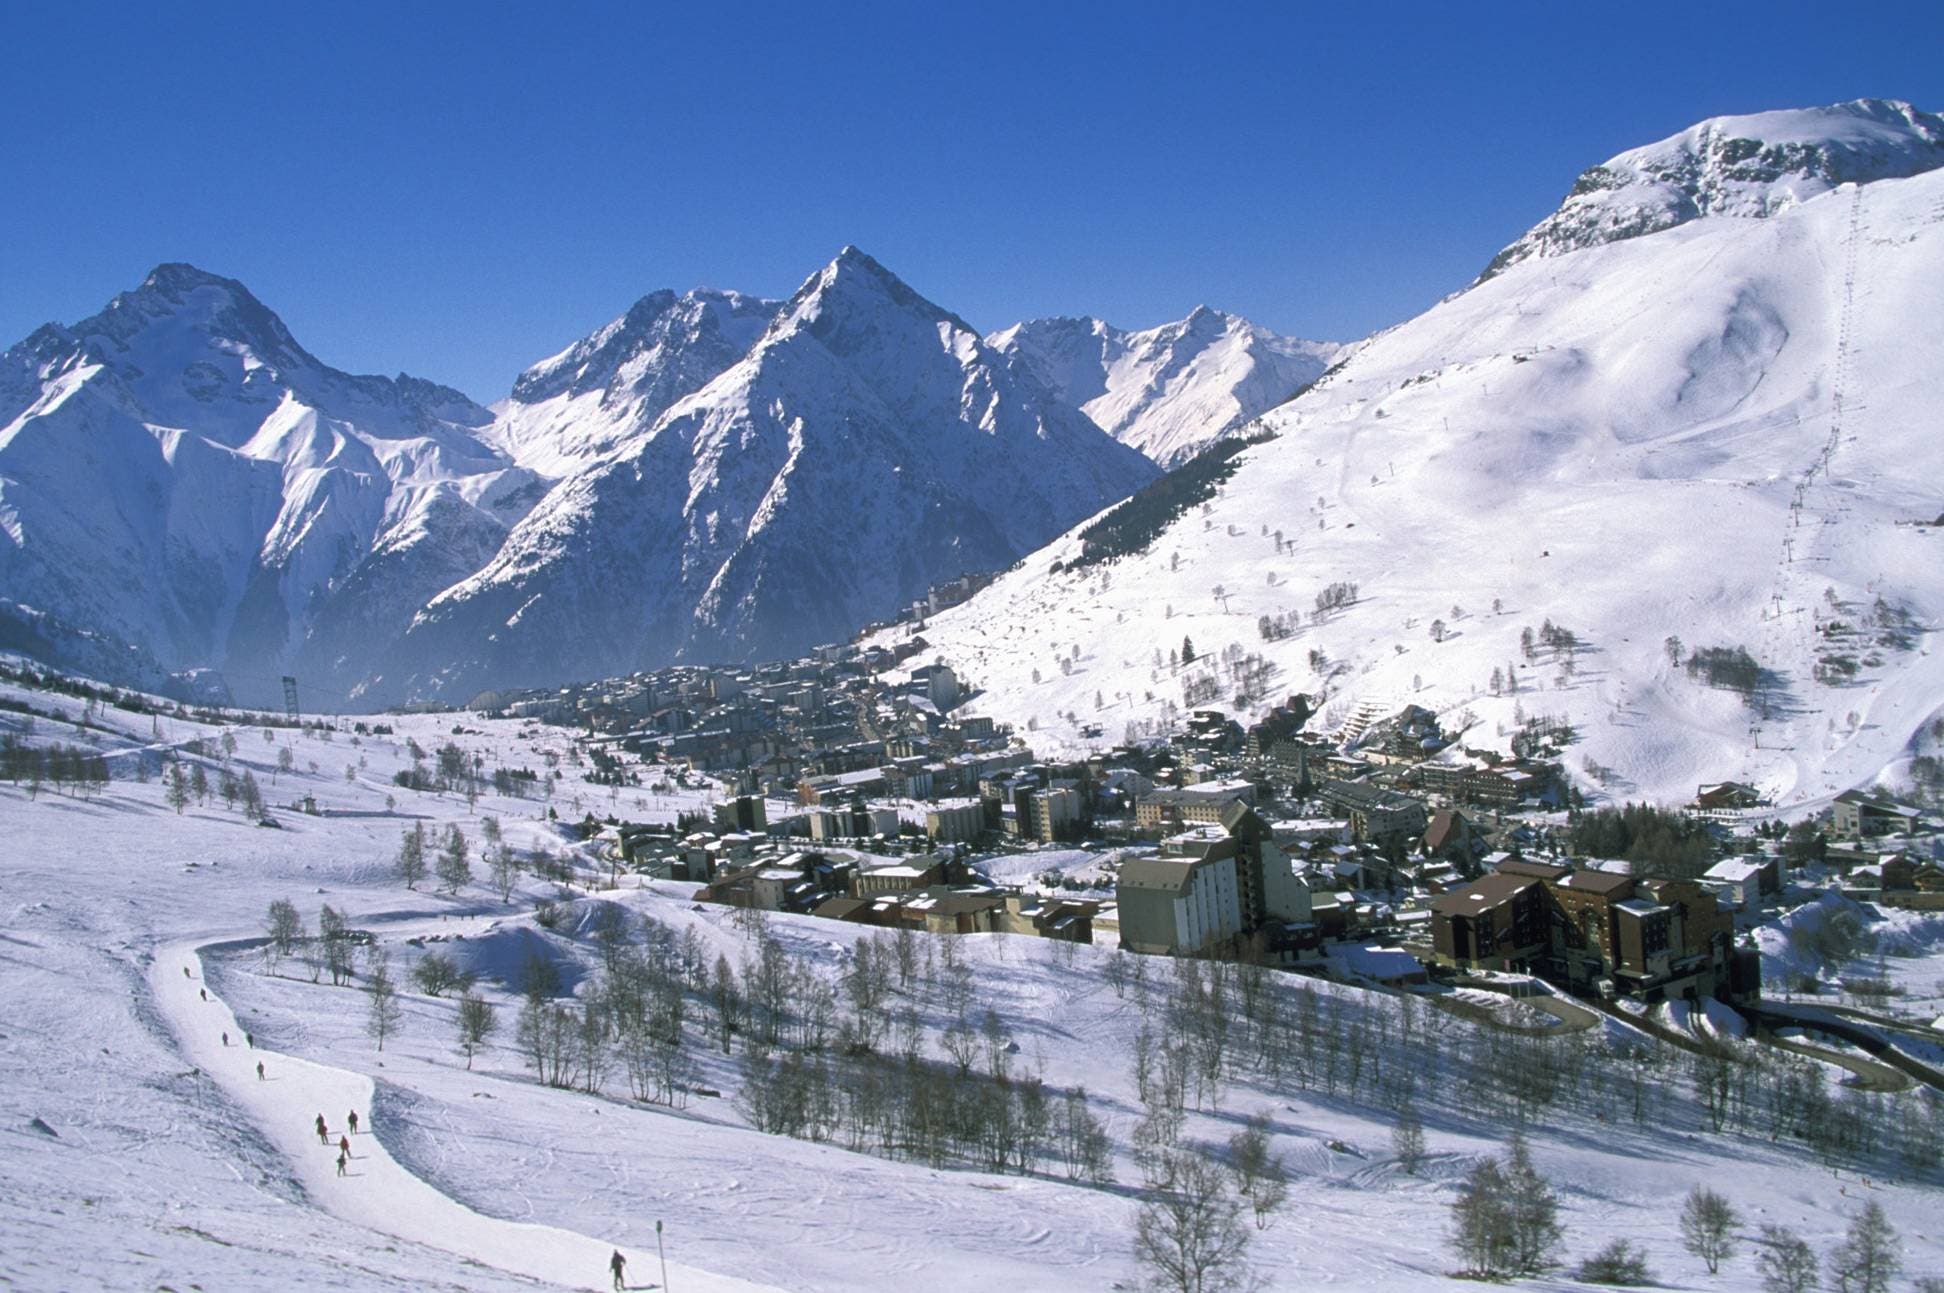 Alpes perderían 30% de nieve este siglo por el calentamiento climático, advierte estudio